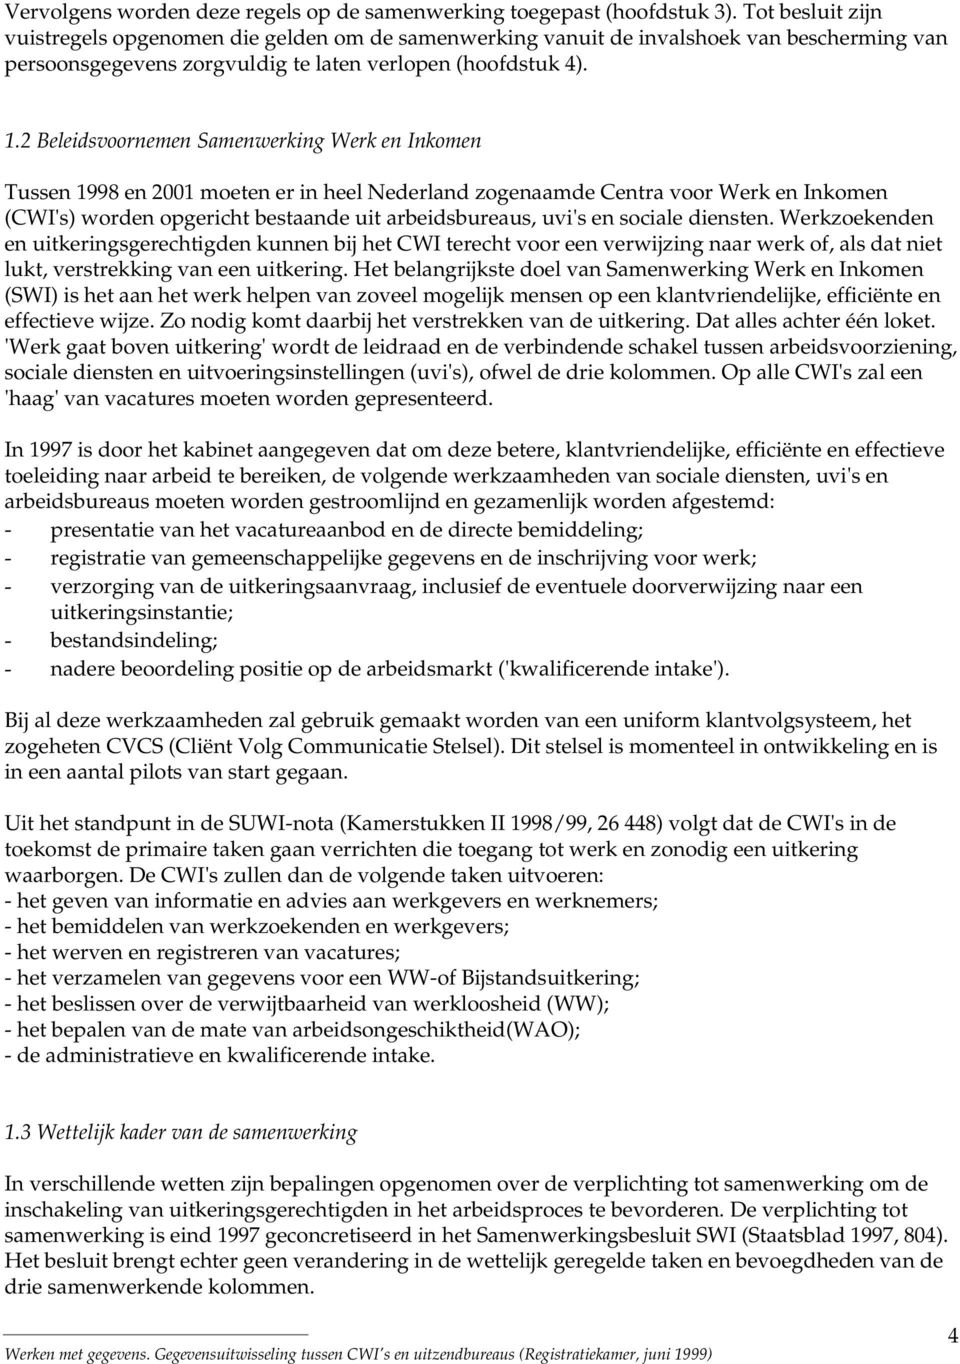 2 Beleidsvoornemen Samenwerking Werk en Inkomen Tussen 1998 en 2001 moeten er in heel Nederland zogenaamde Centra voor Werk en Inkomen (CWI's) worden opgericht bestaande uit arbeidsbureaus, uvi's en